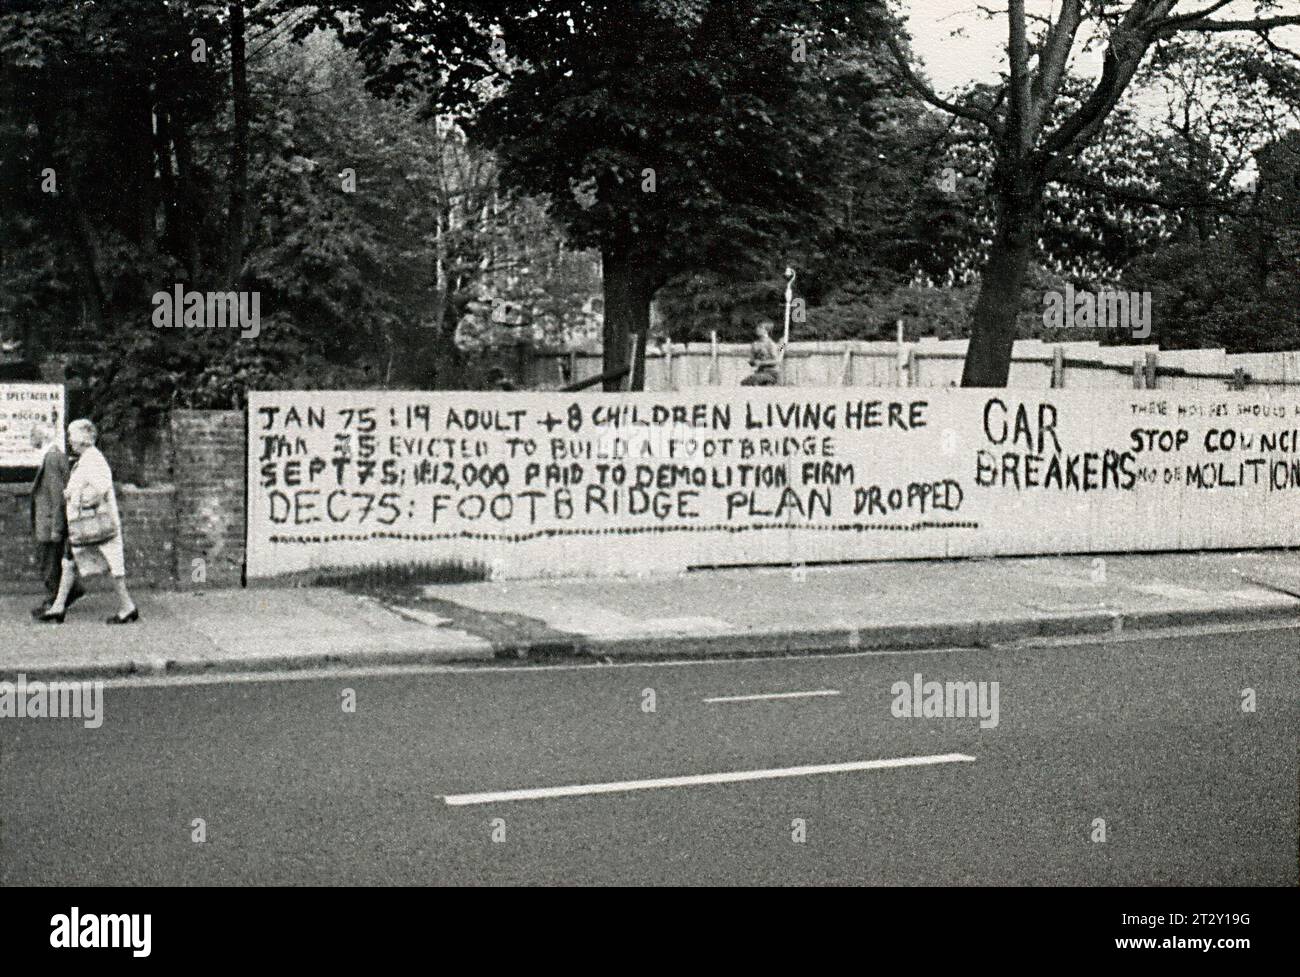 Photographie d'archives en noir et blanc des années 1970 de graffitis protestant contre la démolition d'une maison pour la fourniture d'une passerelle sur une route principale près de Brixton dans l'Inner London. Le développement de la passerelle a été annulé par la suite. Banque D'Images